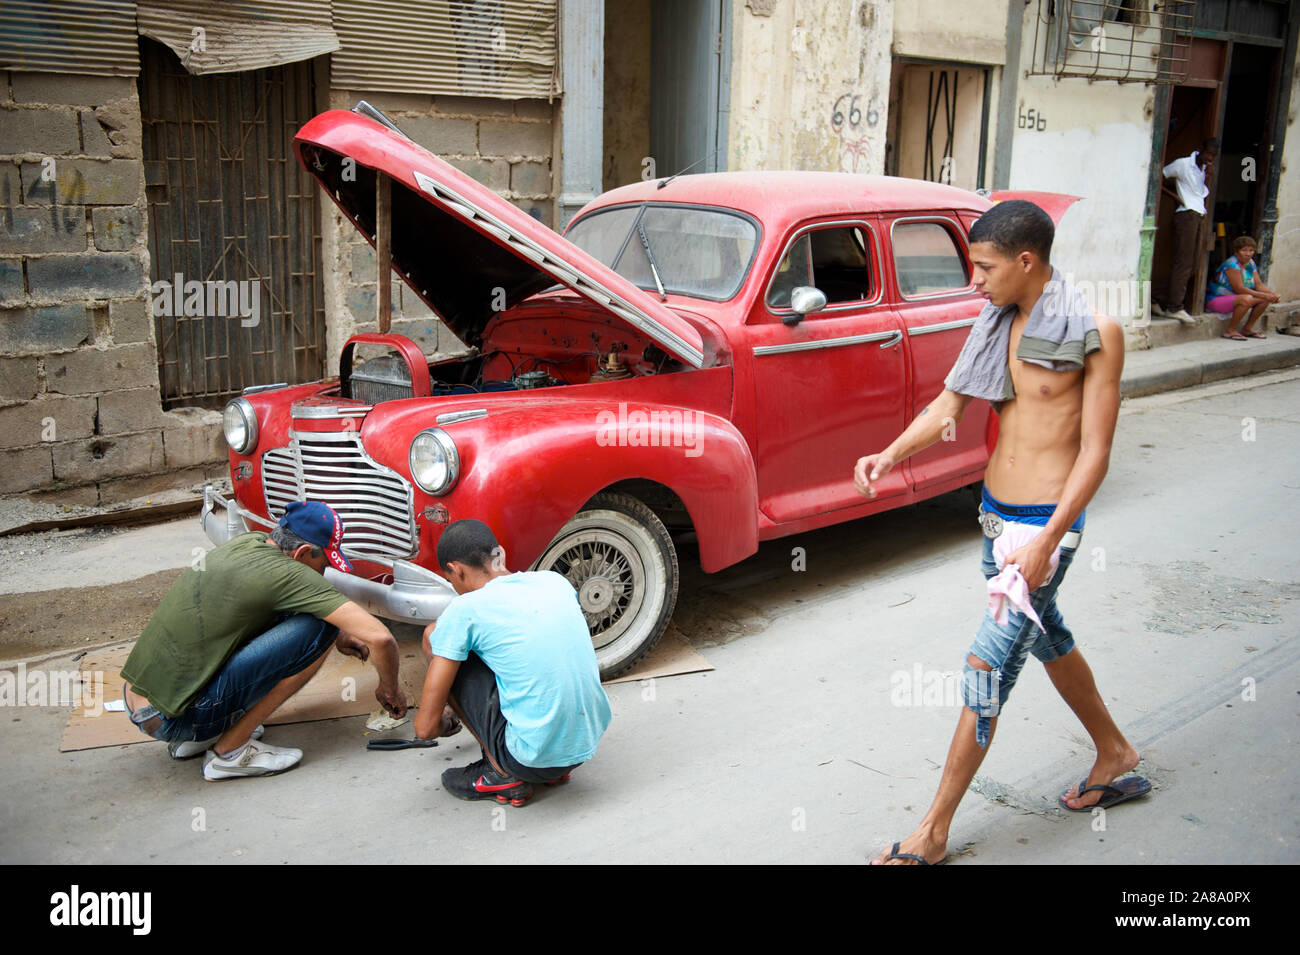 La Havane - 18 MAI 2011 : hommes cubains squat dans la rue à côté d'une voiture rouge vintage avec son capot entrouverte pour la réparation. Banque D'Images